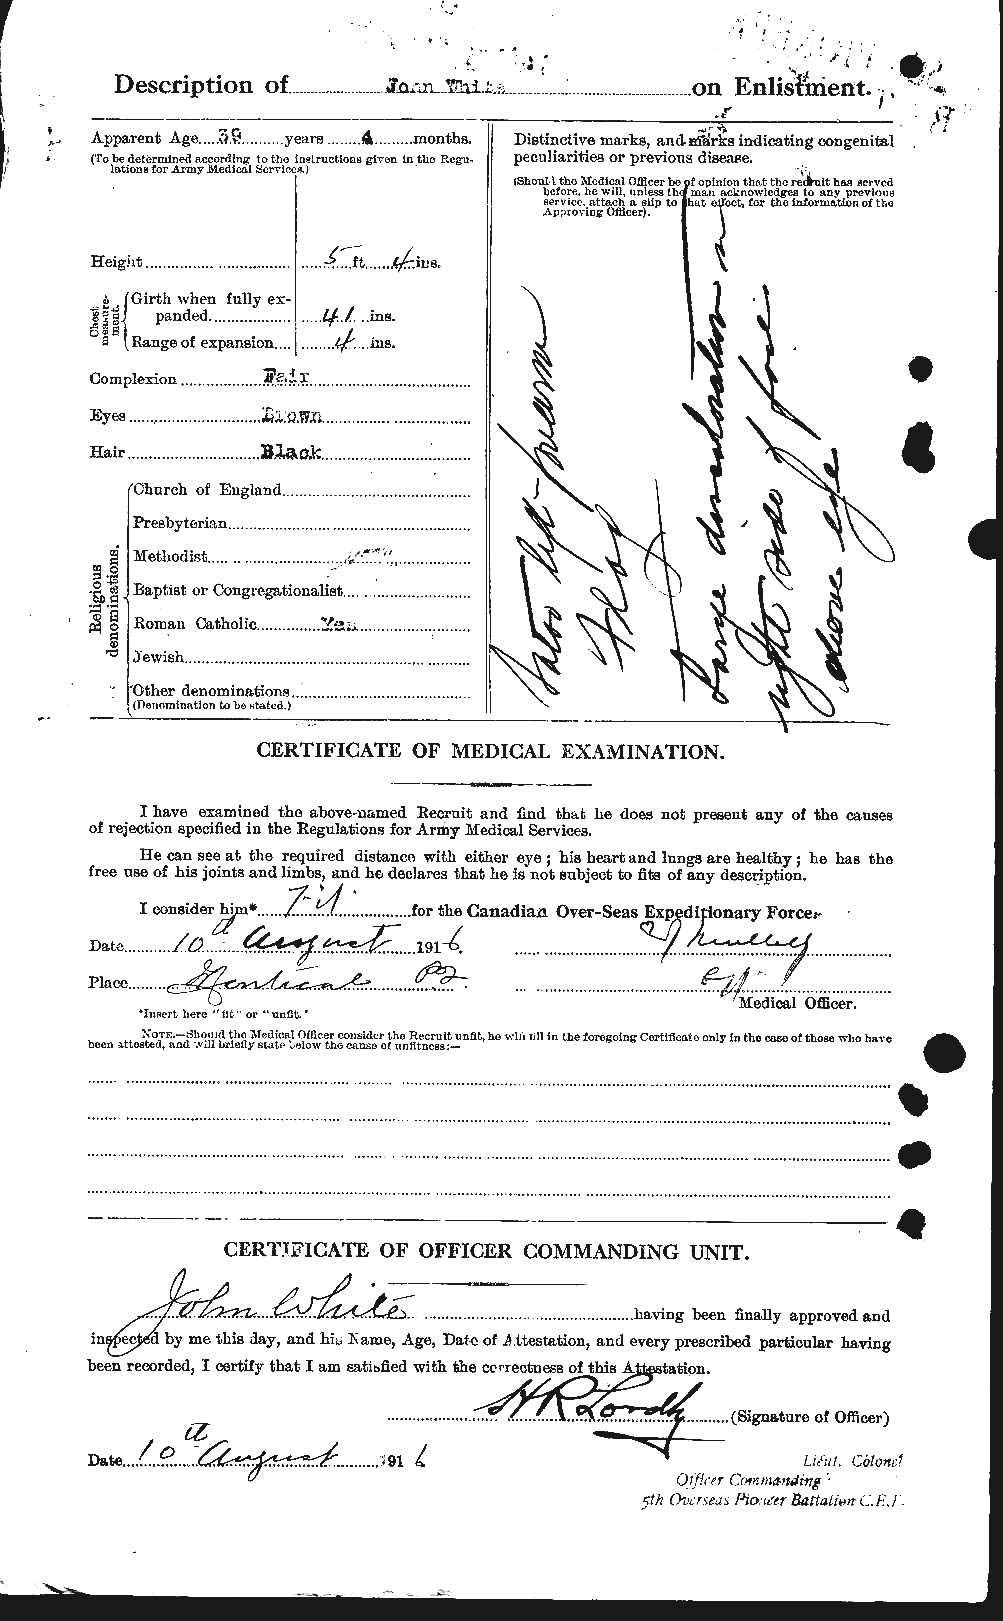 Dossiers du Personnel de la Première Guerre mondiale - CEC 671498b